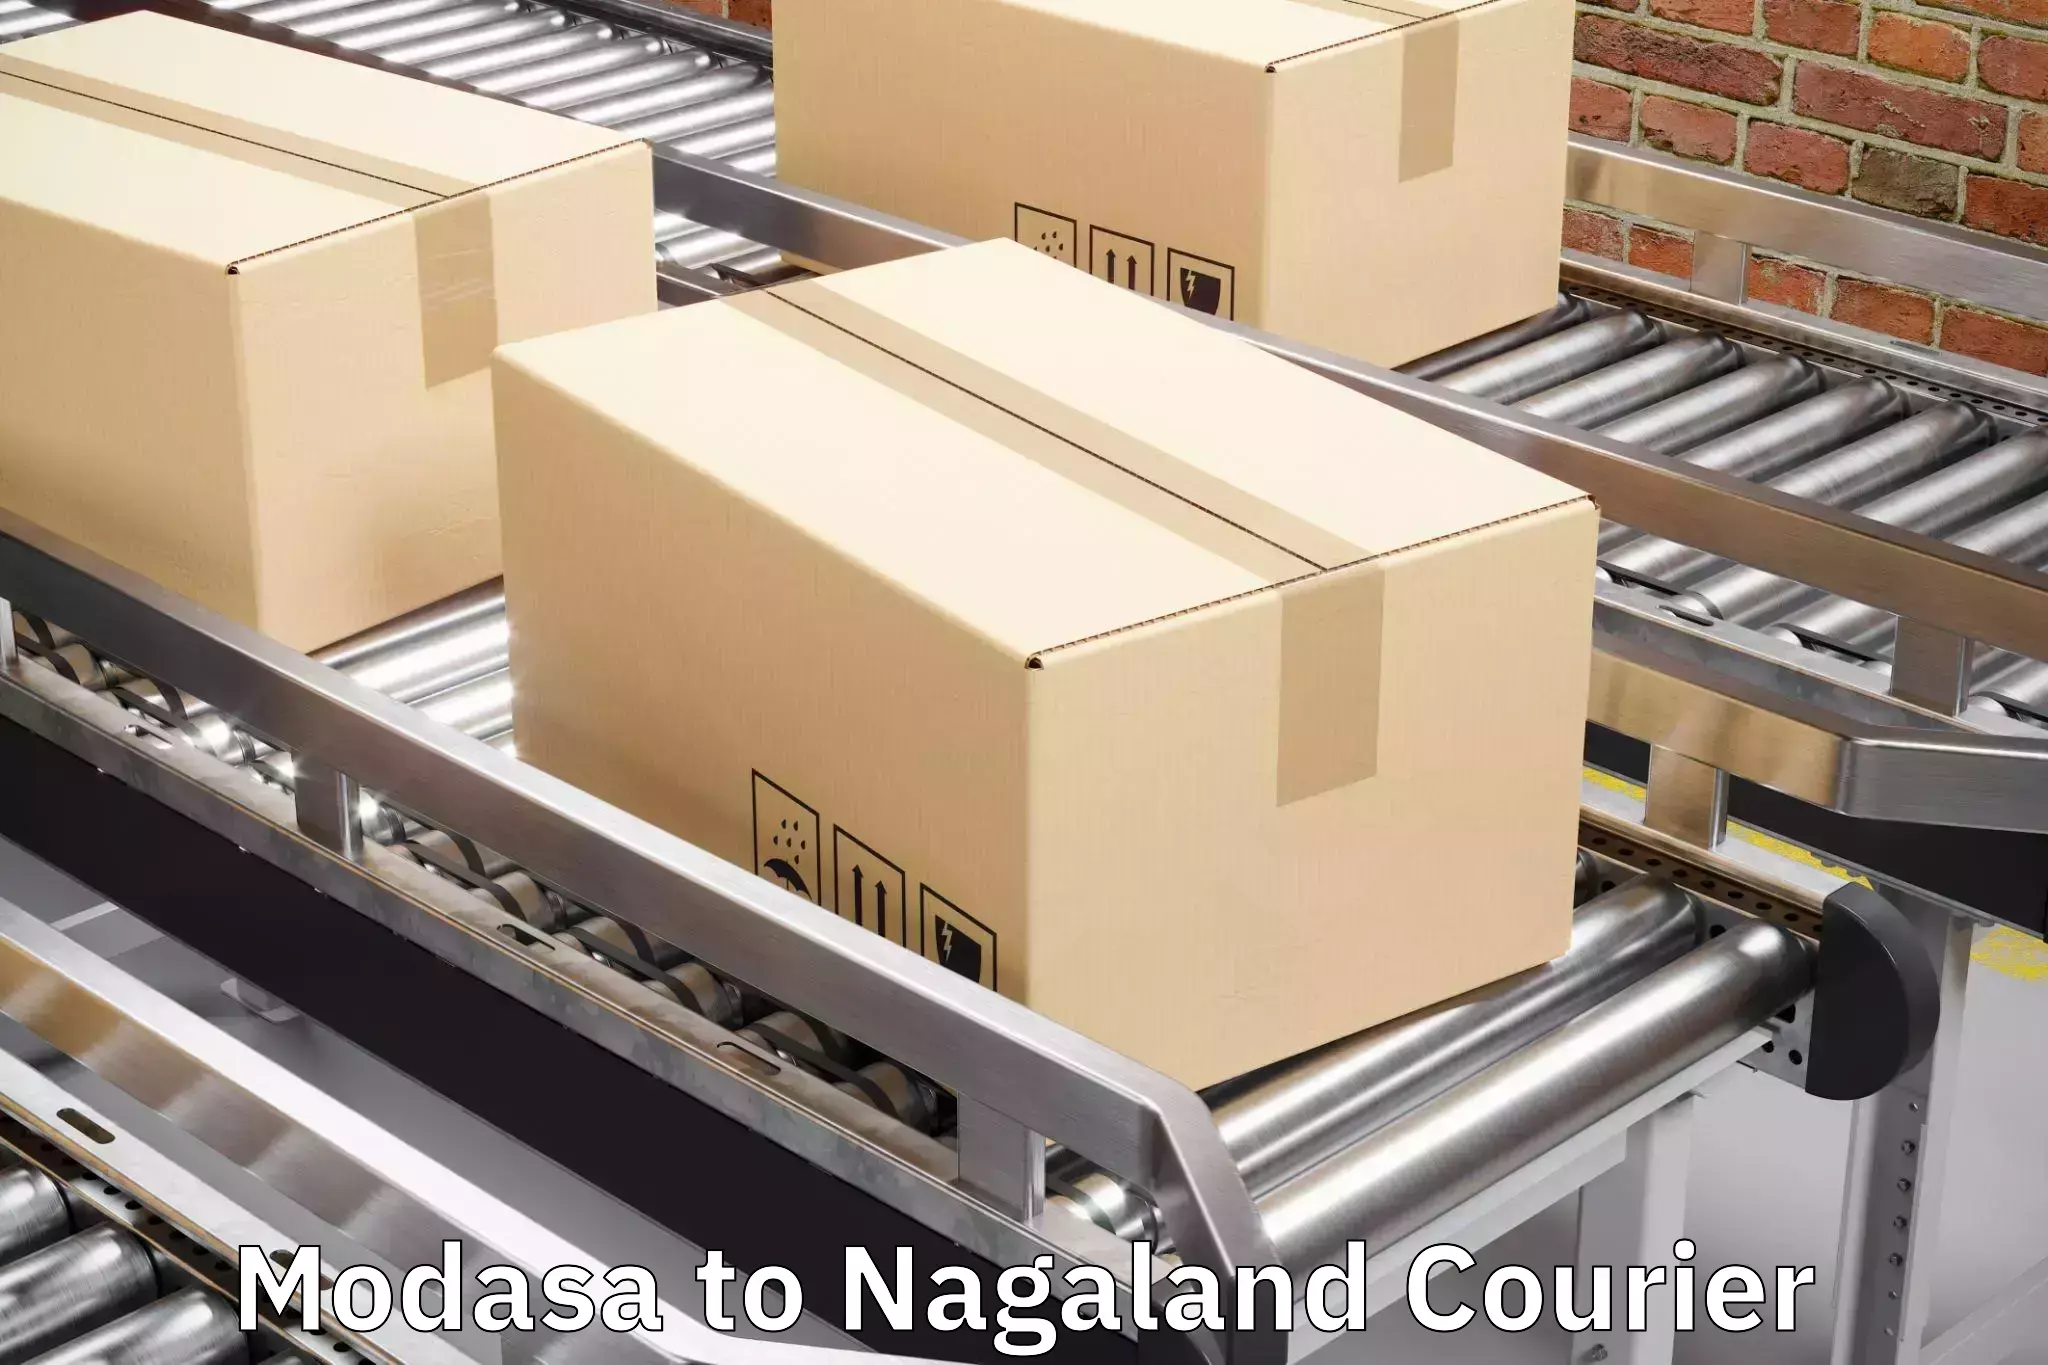 Baggage transport cost Modasa to Nagaland